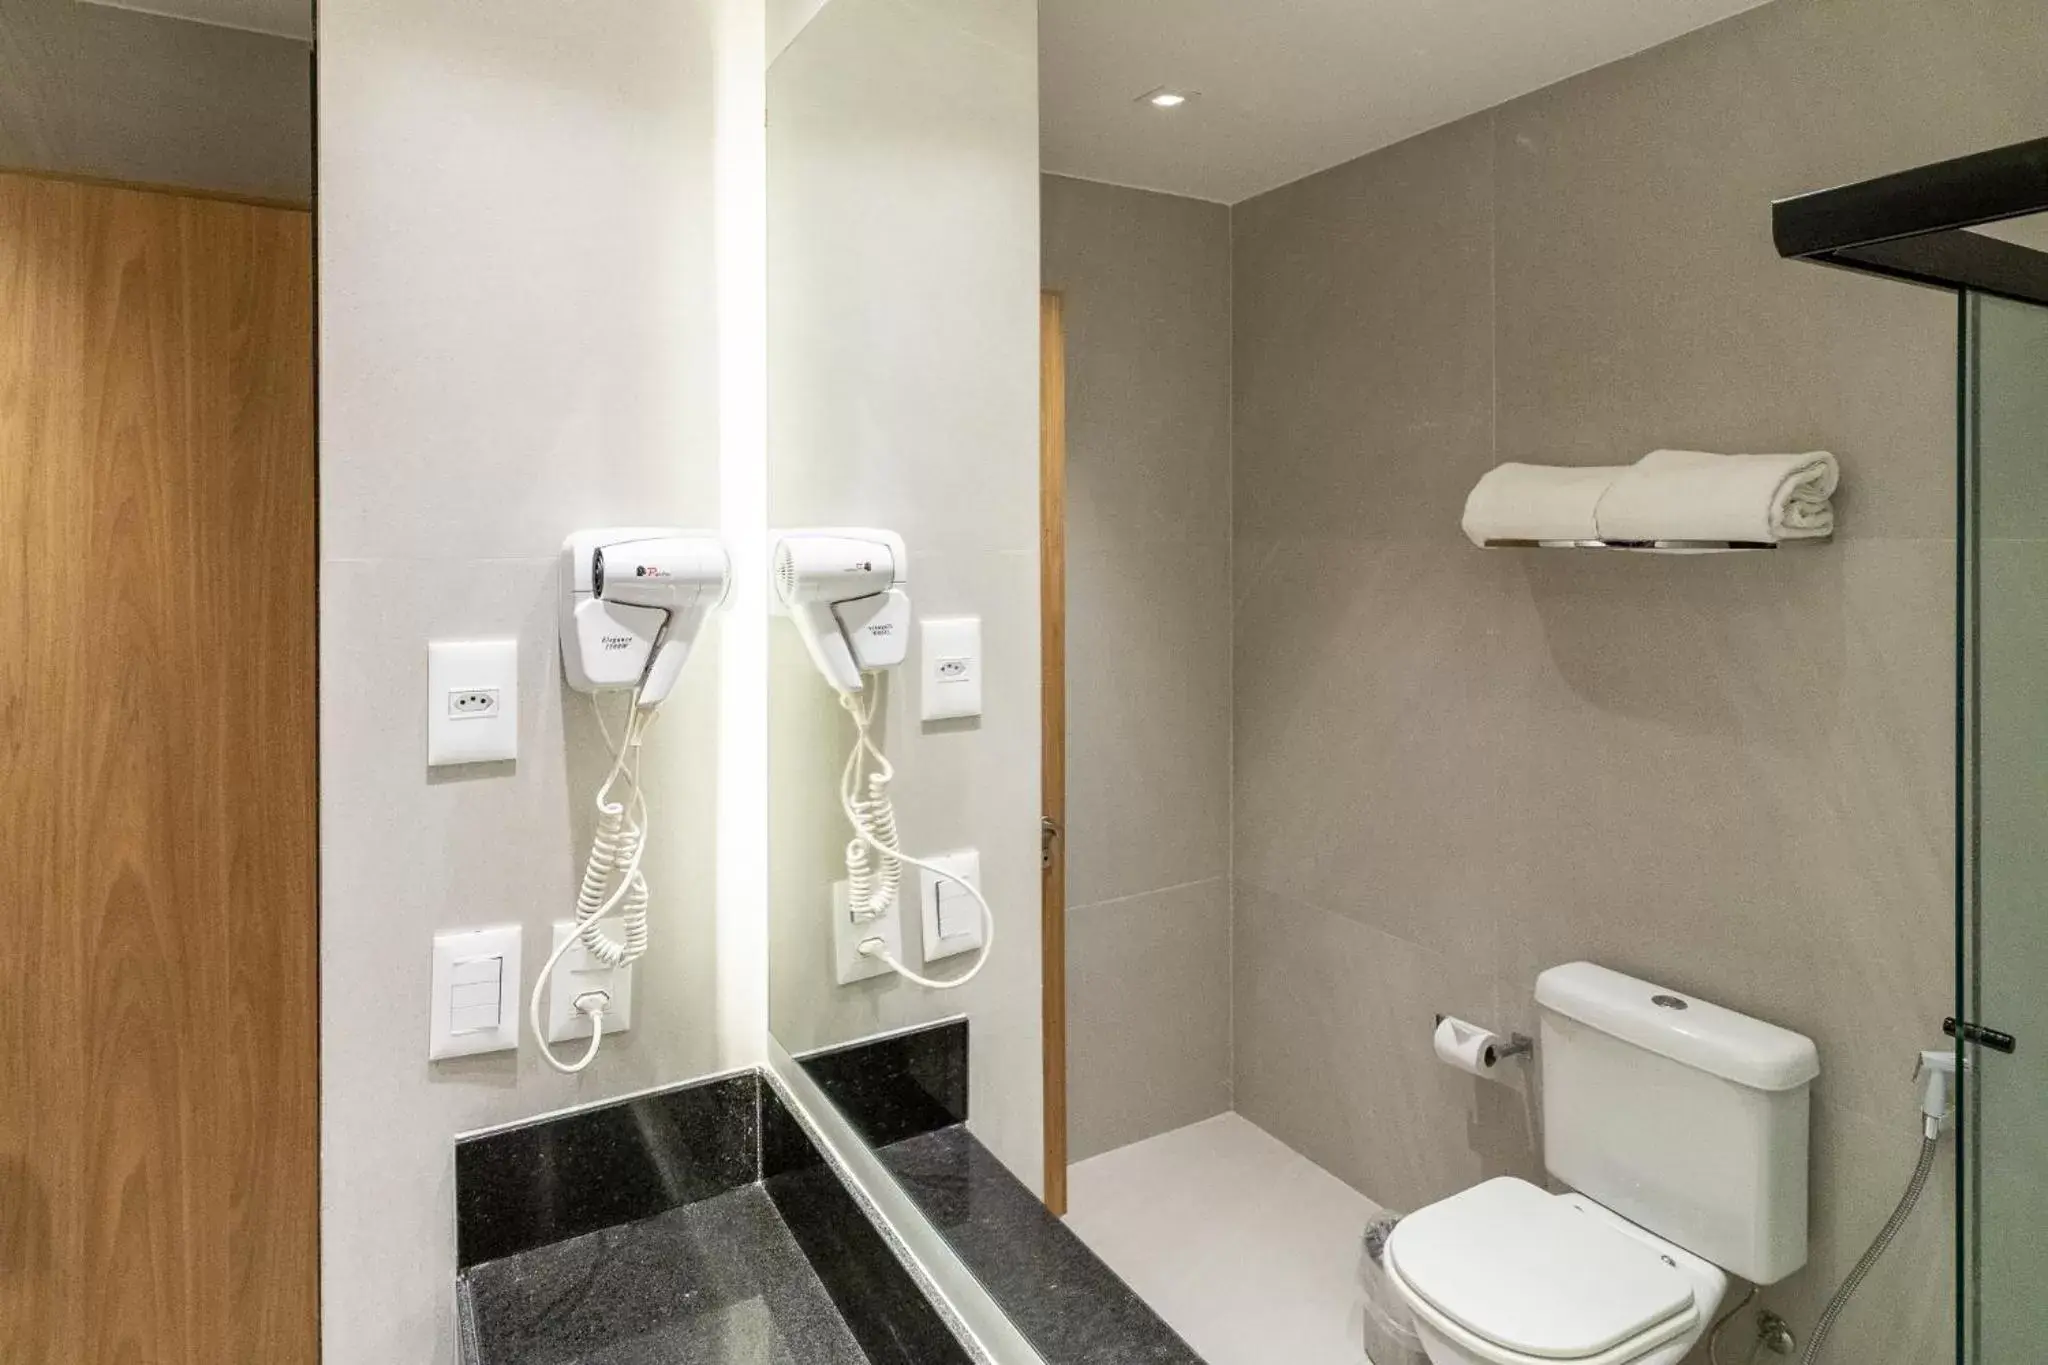 Bathroom in Mar Ipanema Hotel